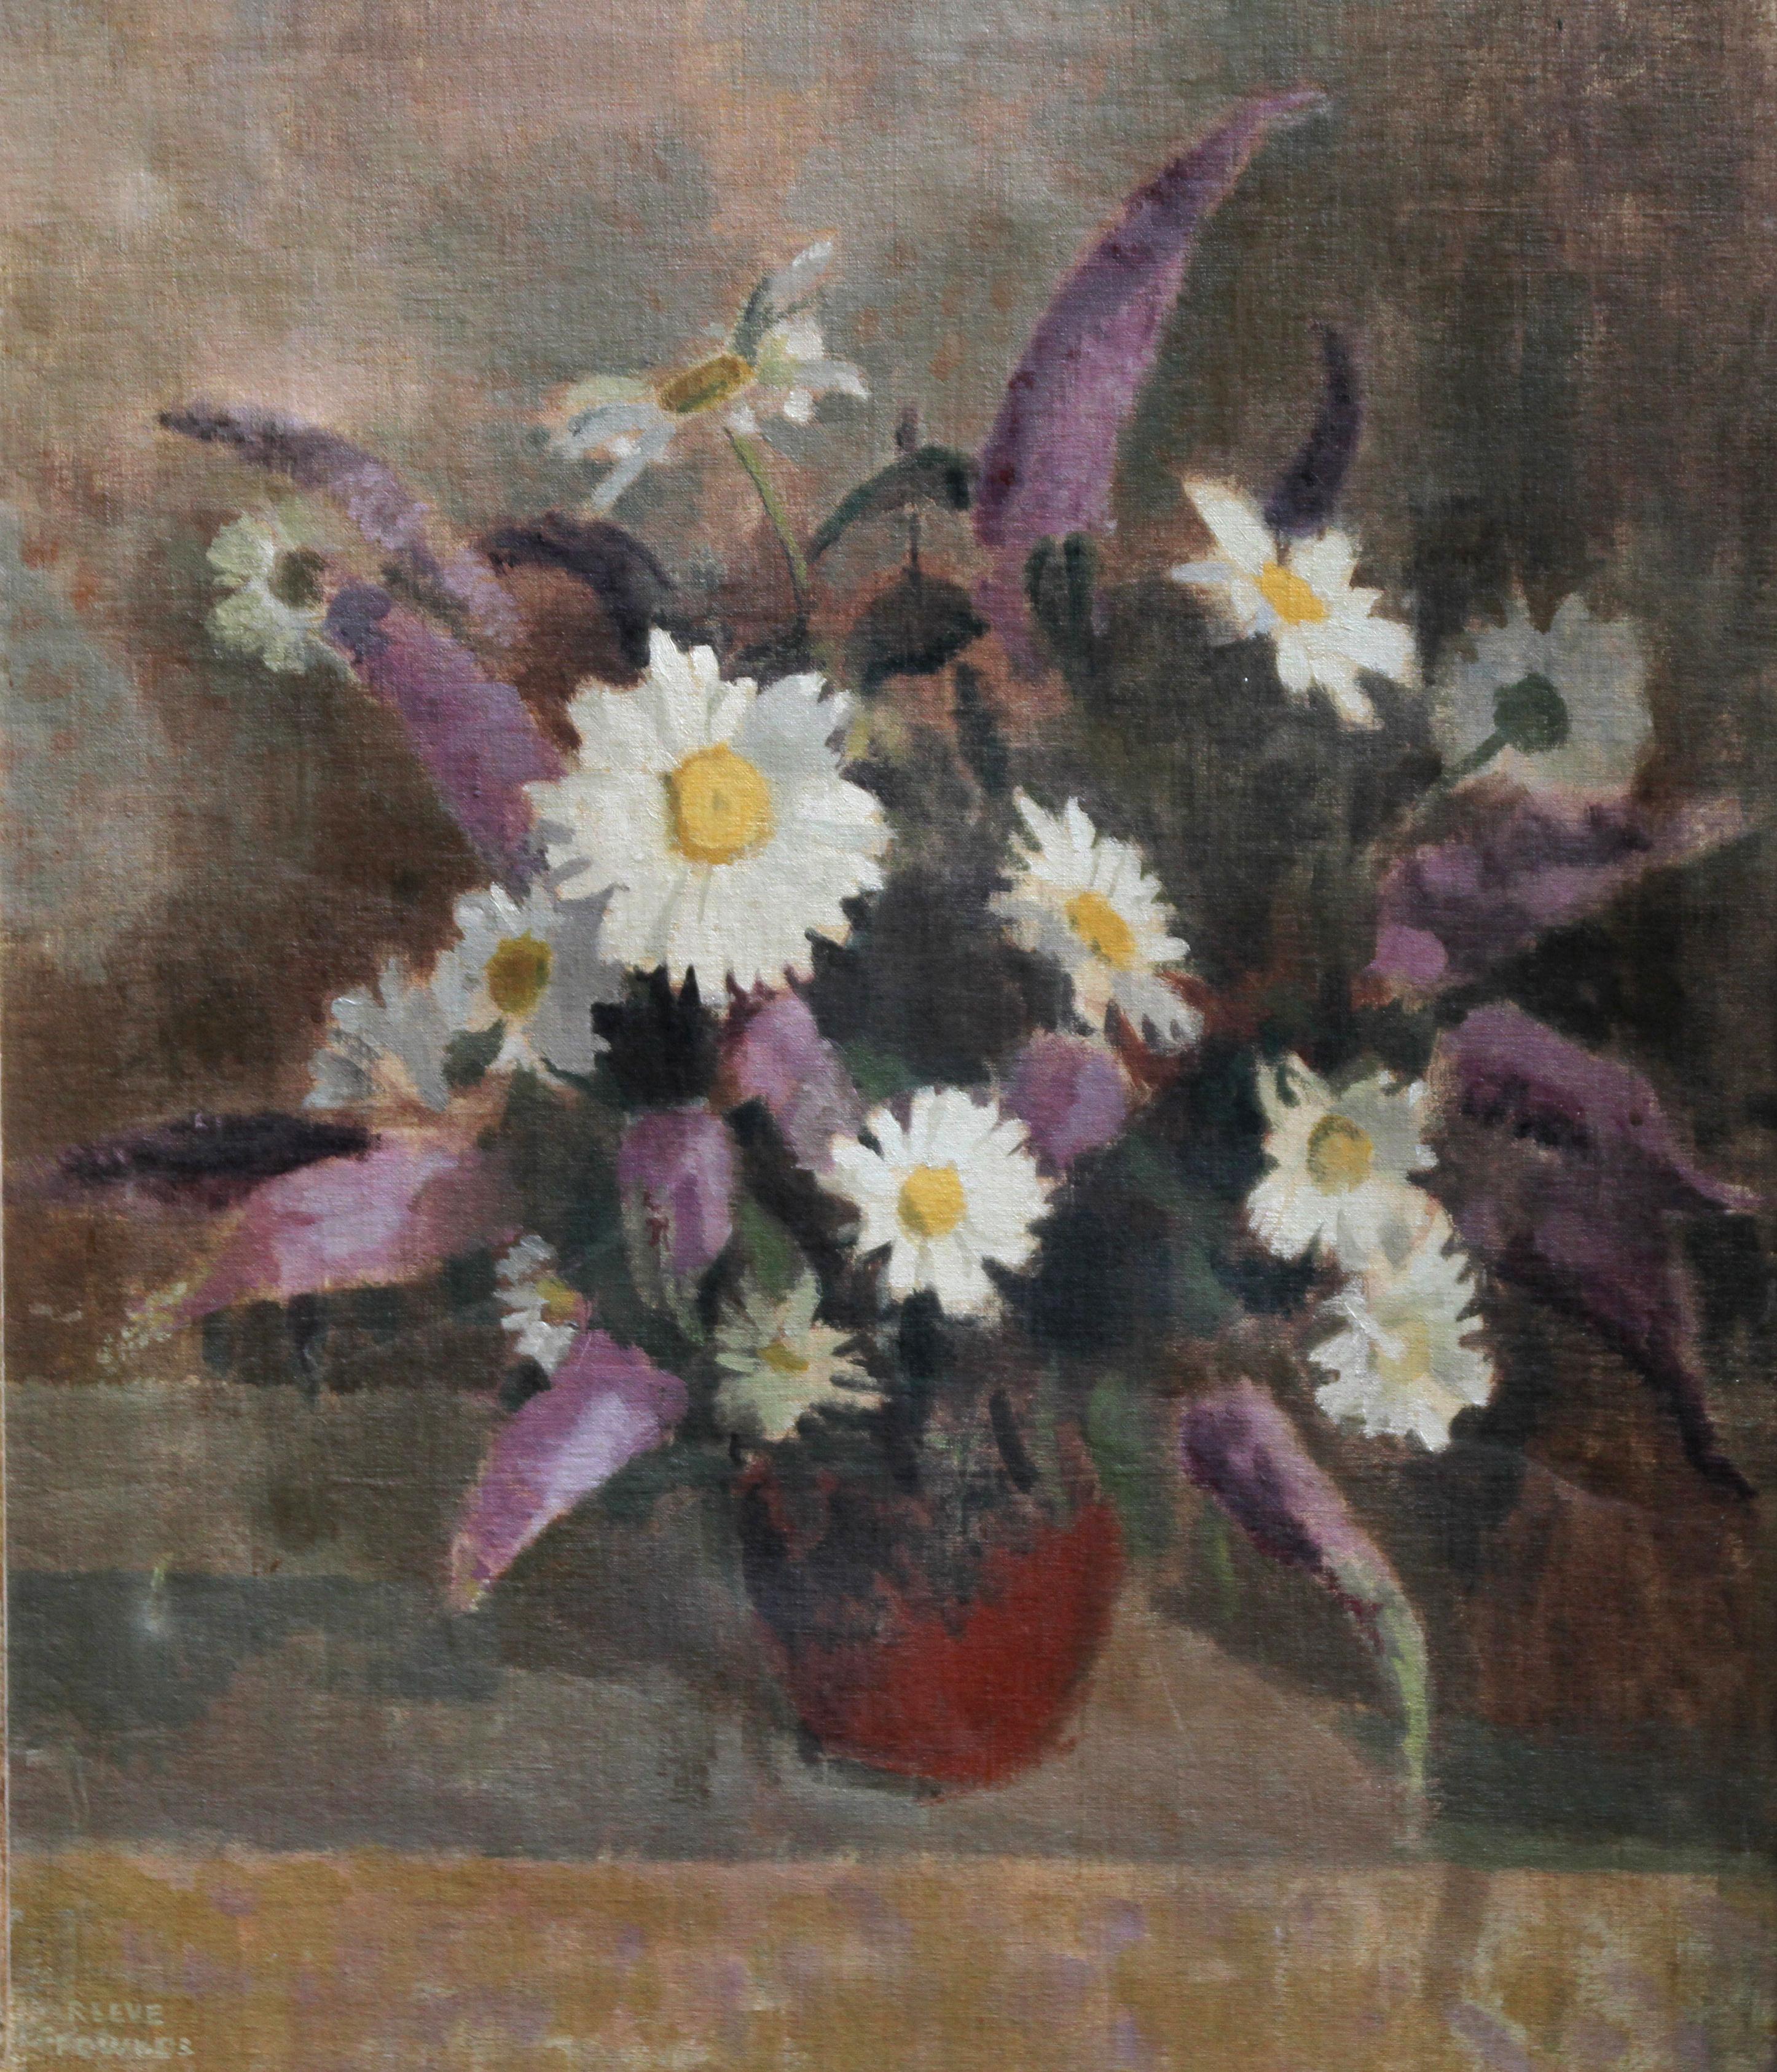 Cette belle peinture à l'huile florale est l'œuvre de l'artiste britannique Amy Constance Reeve Fowlkes qui a exposé tout au long de sa carrière. Peinte en 1940, cette huile étonnante est un arrangement audacieux de marguerites dans une palette